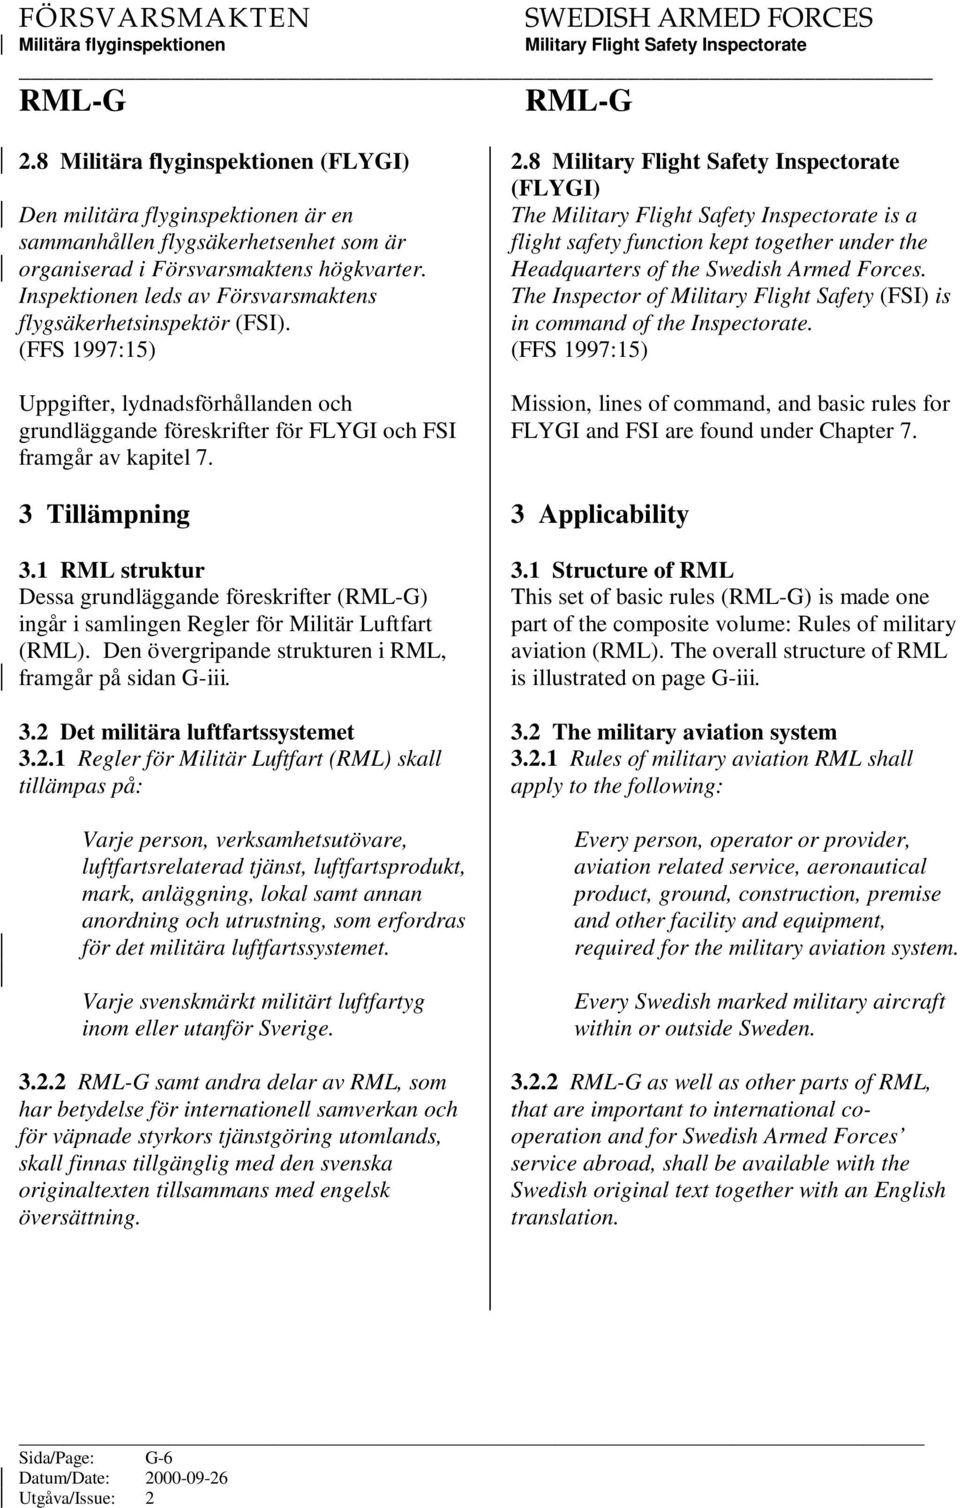 1 RML struktur Dessa grundläggande föreskrifter () ingår i samlingen Regler för Militär Luftfart (RML). Den övergripande strukturen i RML, framgår på sidan G-iii. 3.2 Det militära luftfartssystemet 3.